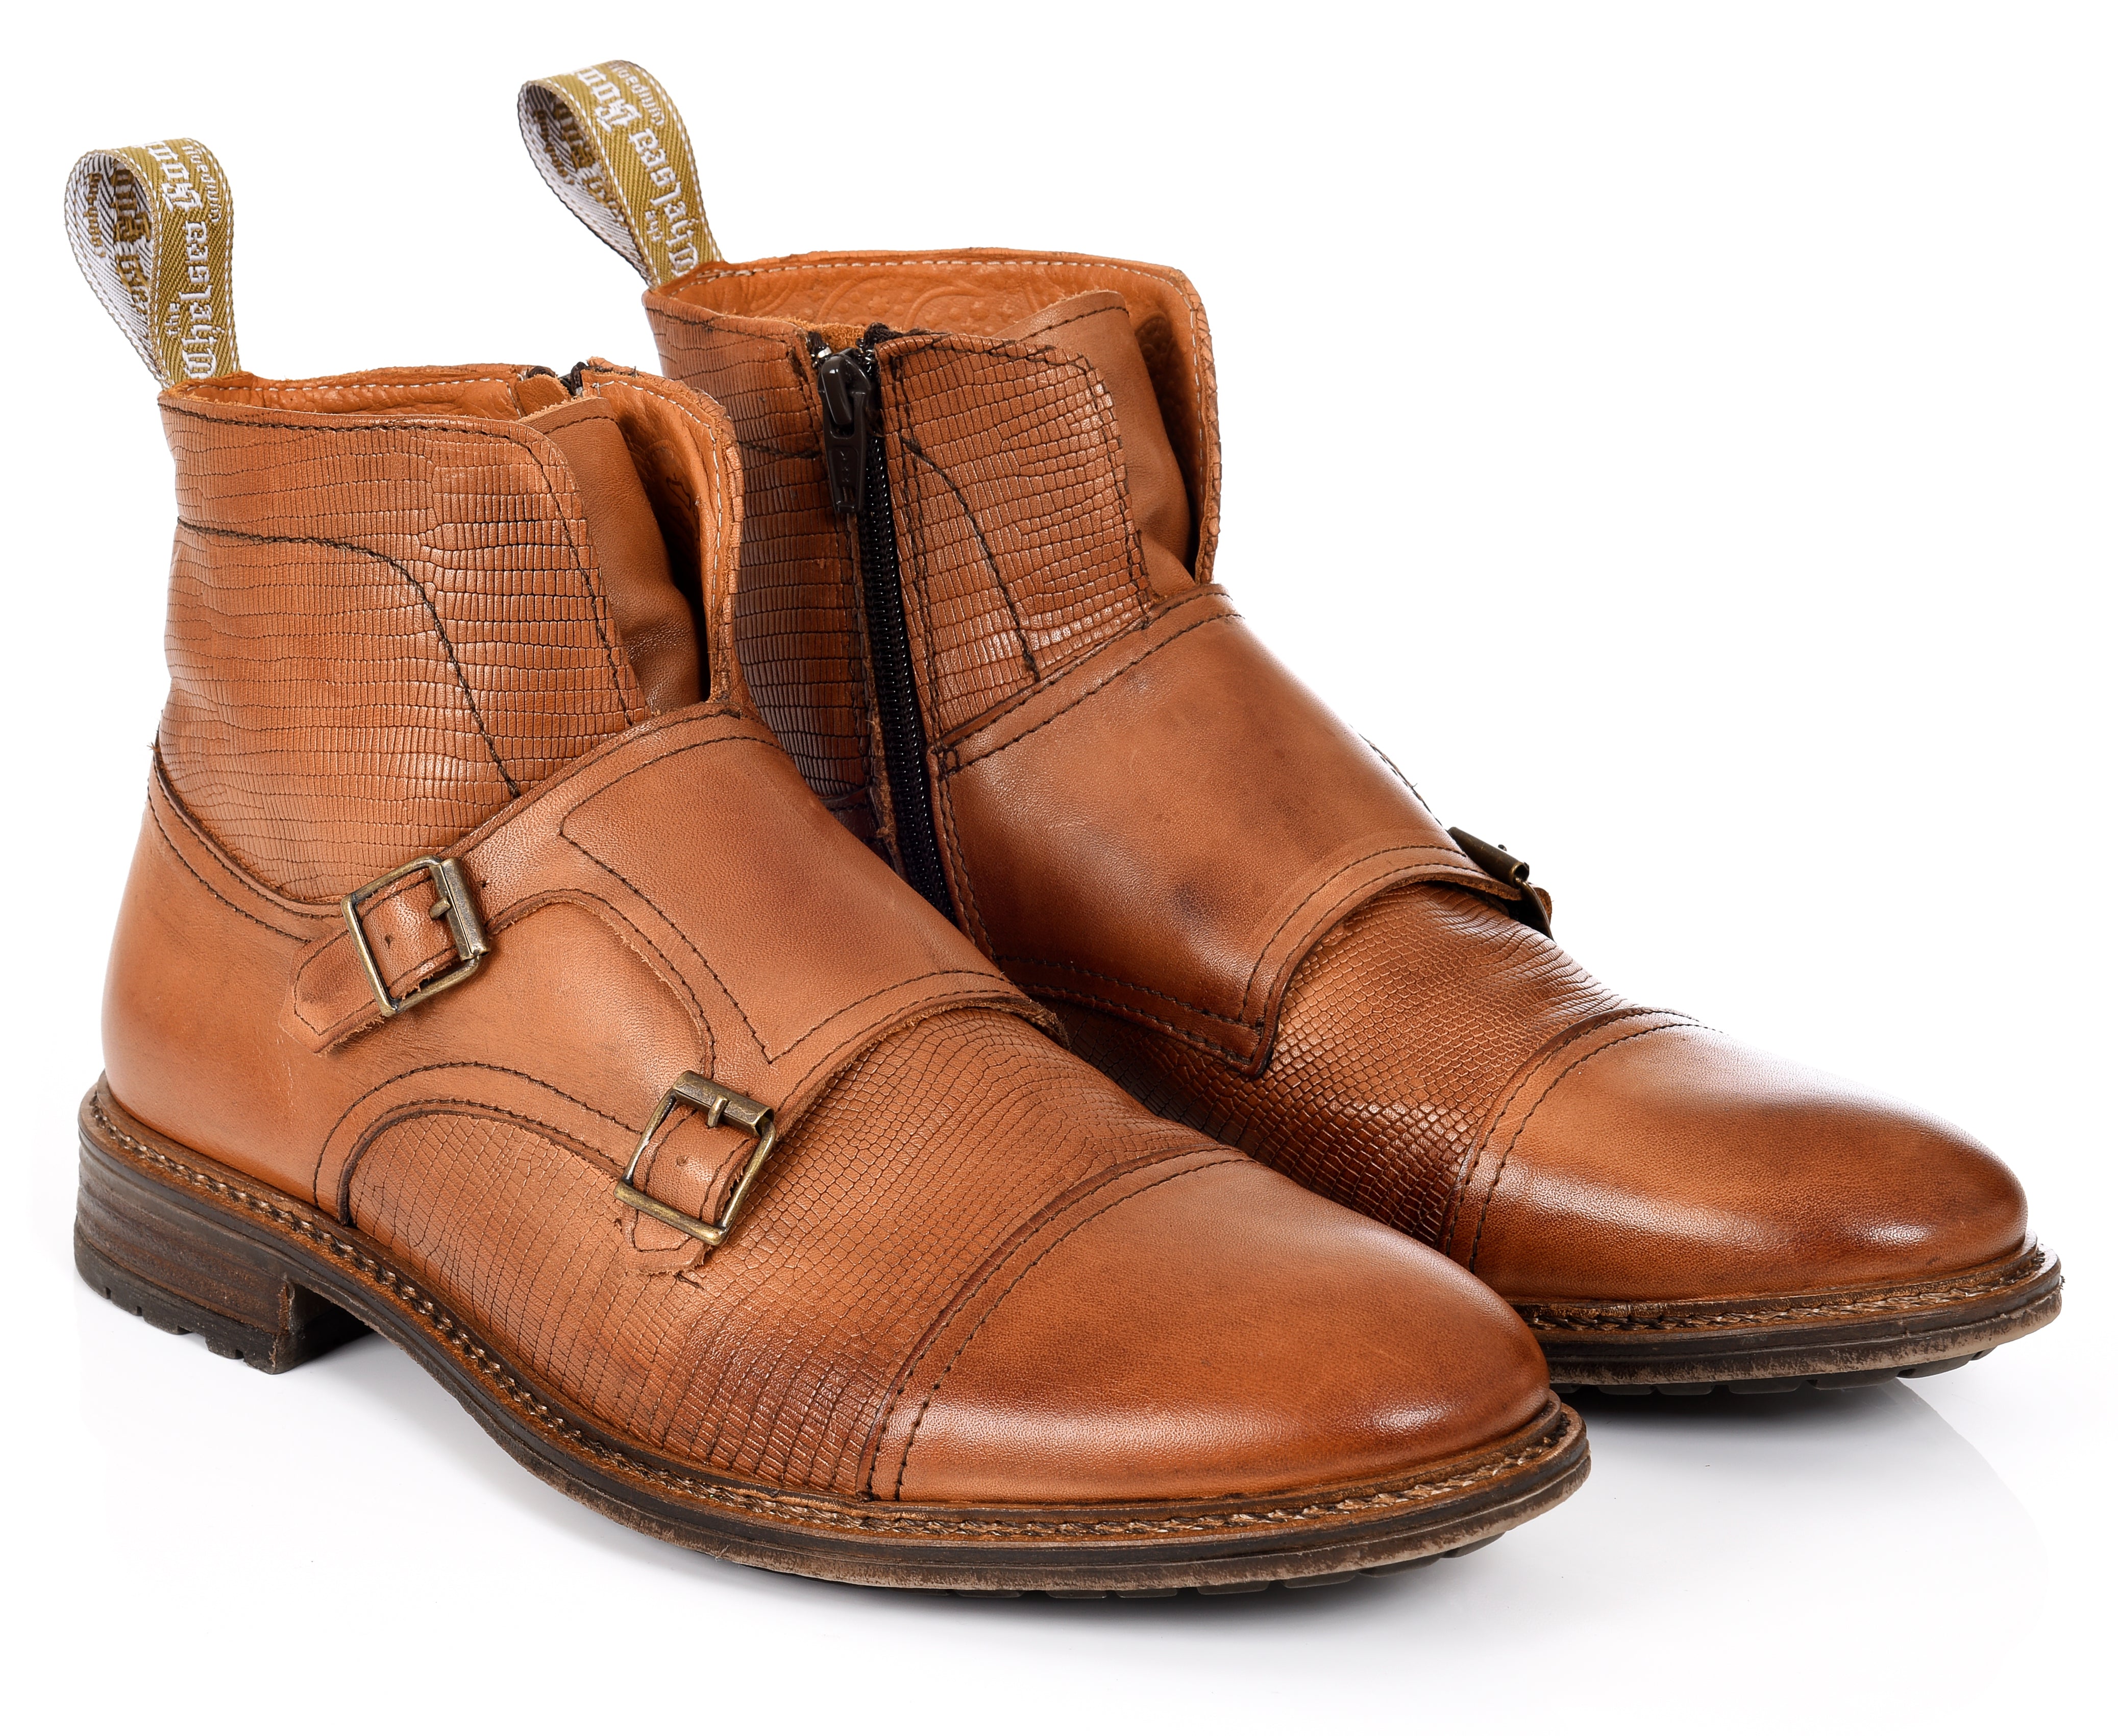 Men’s Double Buckle - Brown 7.5 Uk The Chelsea Boot Co Est. 1851